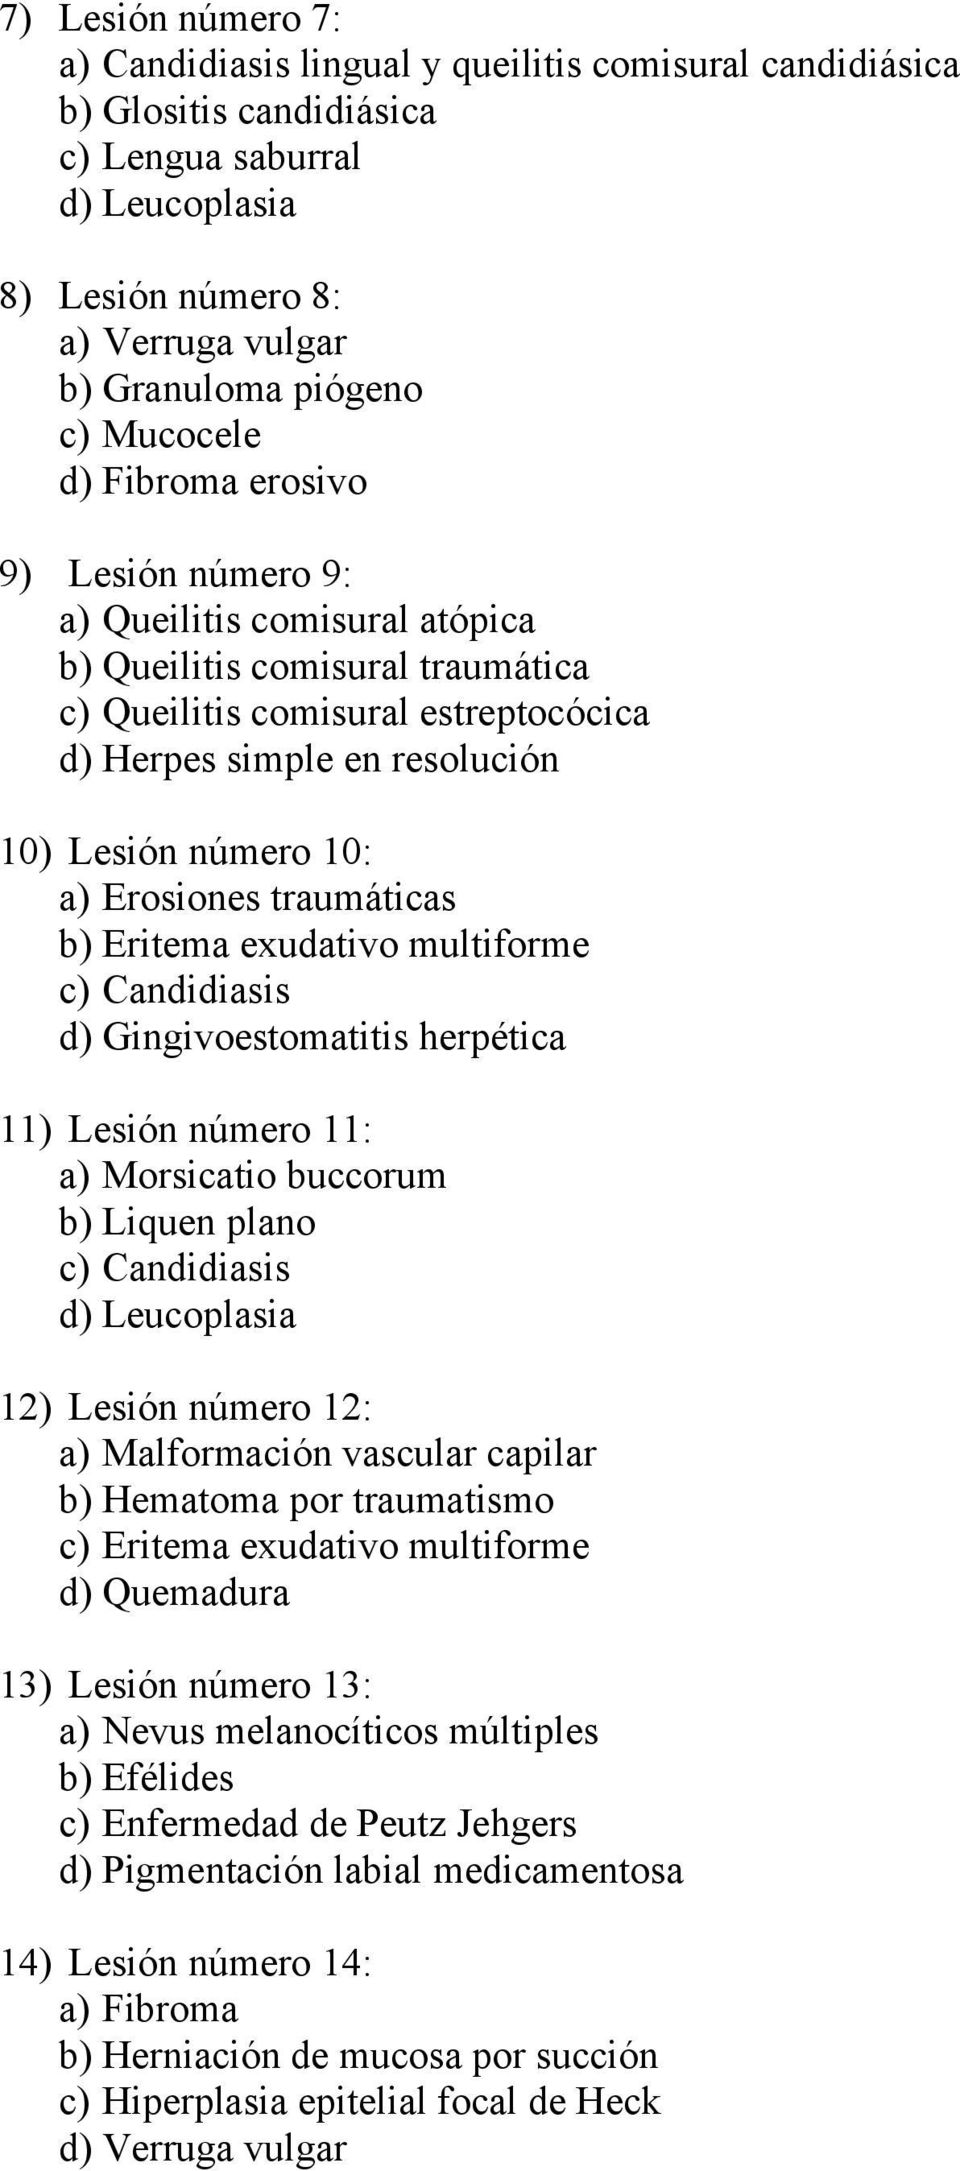 10: a) Erosiones traumáticas b) Eritema exudativo multiforme c) Candidiasis d) Gingivoestomatitis herpética 11) Lesión número 11: a) Morsicatio buccorum b) Liquen plano c) Candidiasis d) Leucoplasia